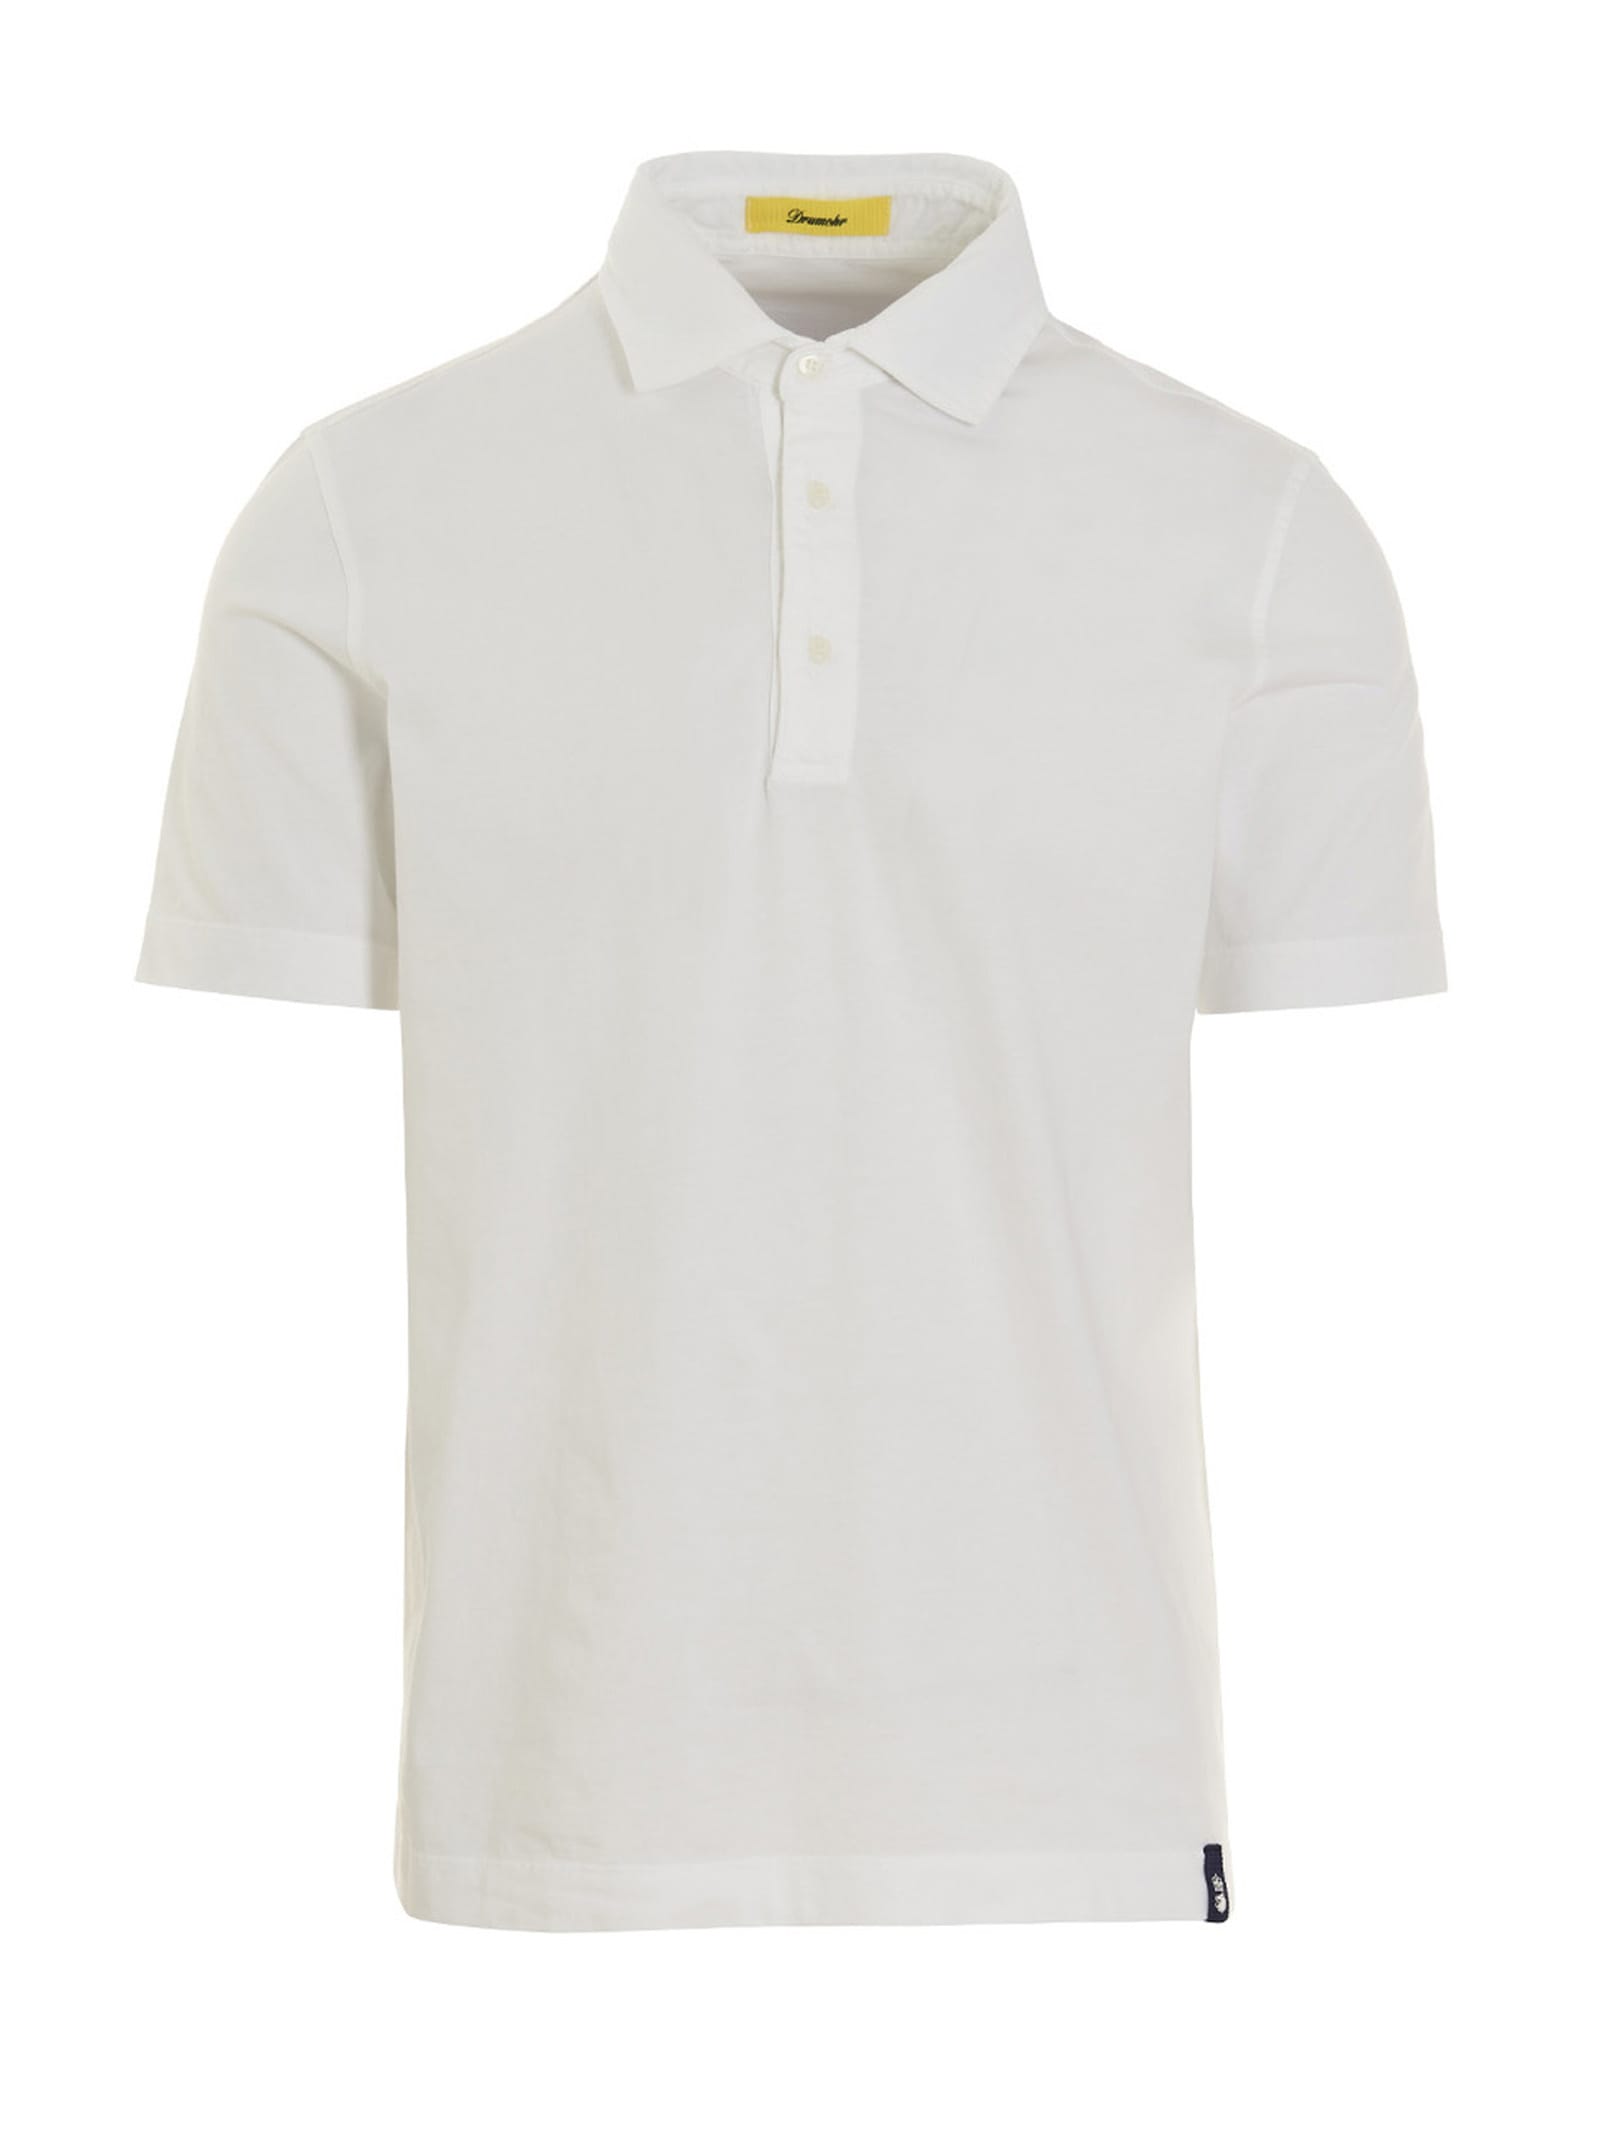 Drumohr Light Cotton Polo Shirt. Drumohr